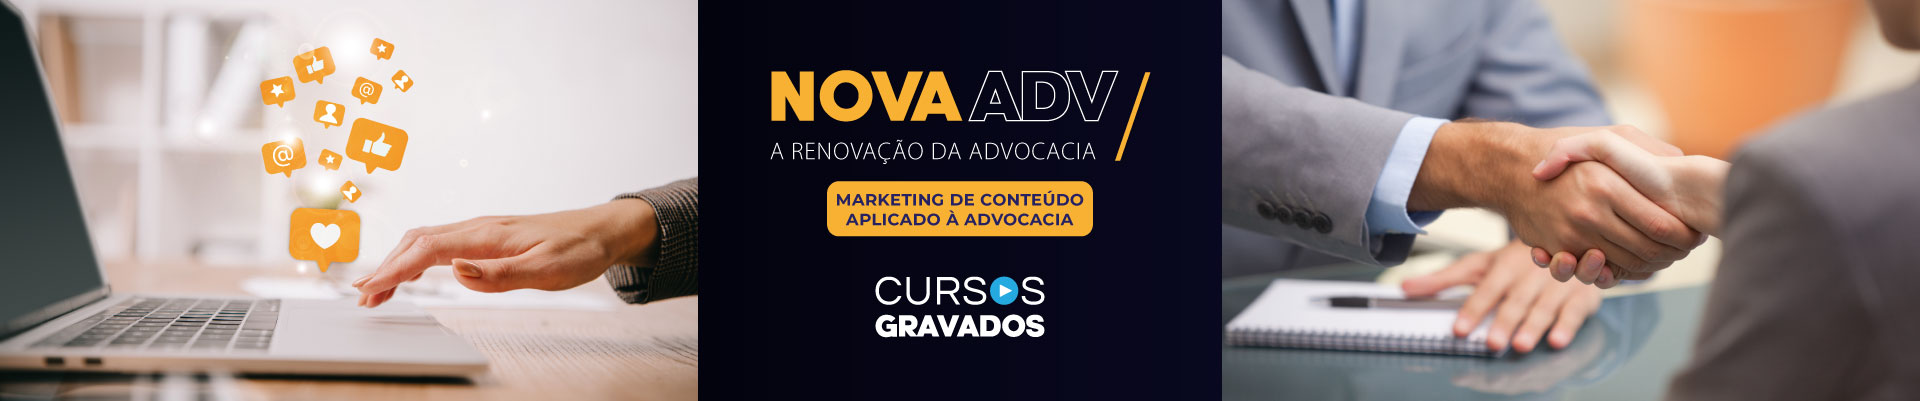 NovaAdv - Marketing de conteúdo aplicado à advocacia - Módulo 2